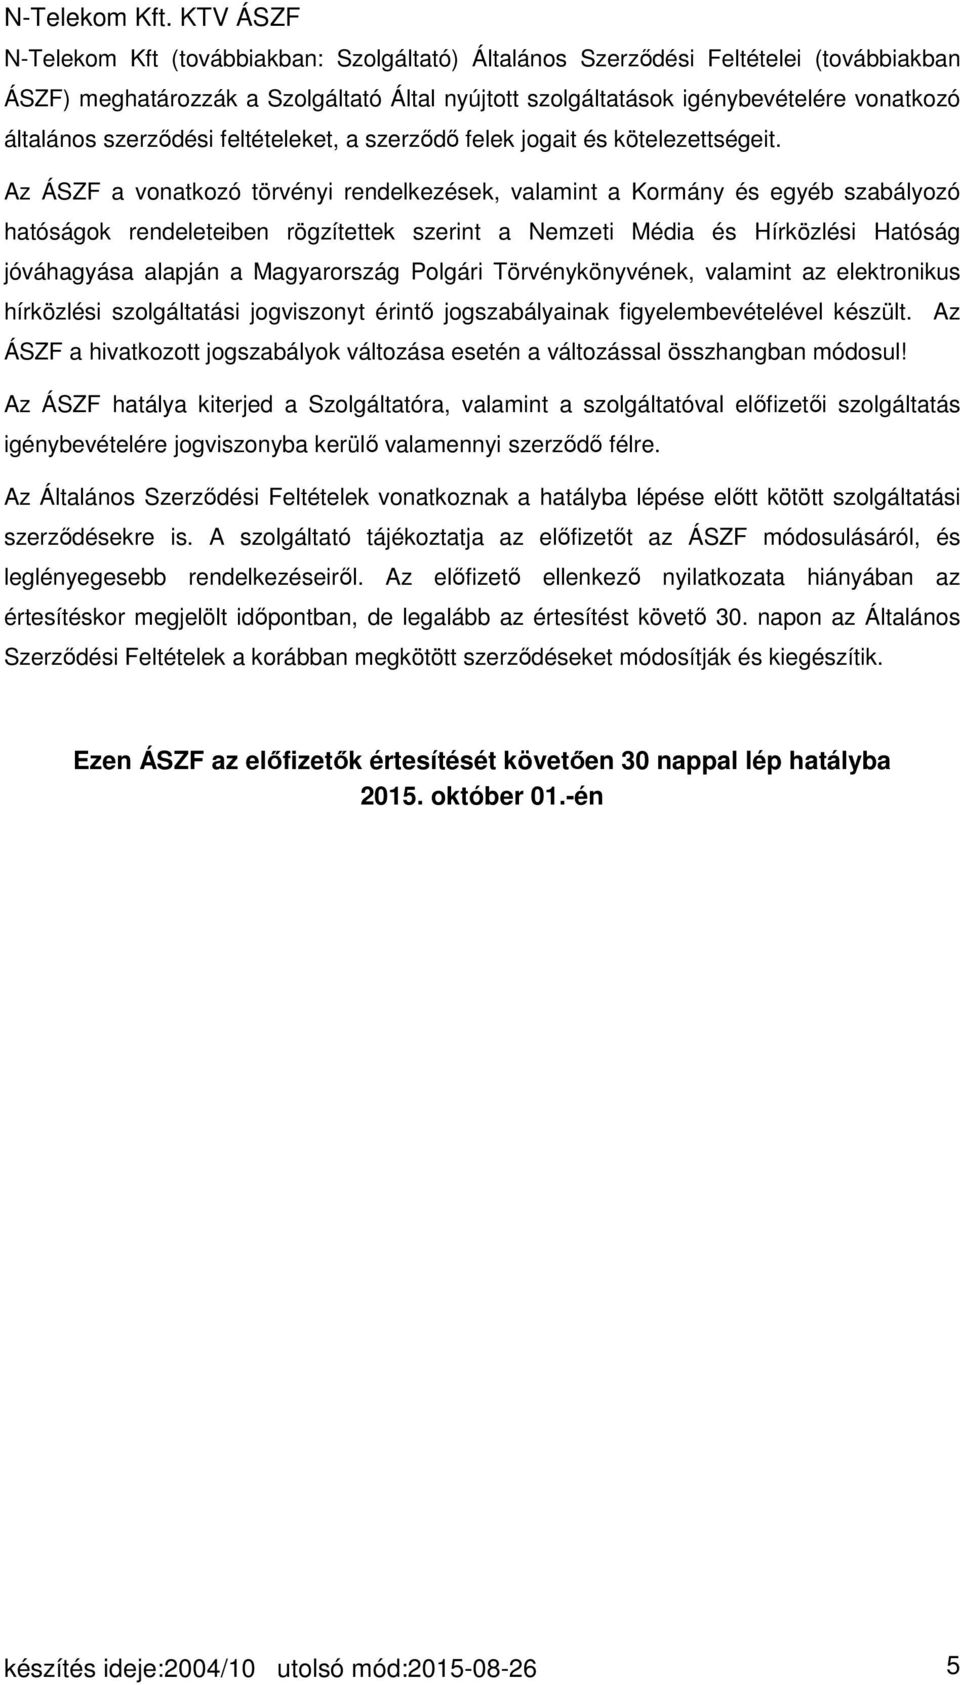 Az ÁSZF a vonatkozó törvényi rendelkezések, valamint a Kormány és egyéb szabályozó hatóságok rendeleteiben rögzítettek szerint a Nemzeti Média és Hírközlési Hatóság jóváhagyása alapján a Magyarország